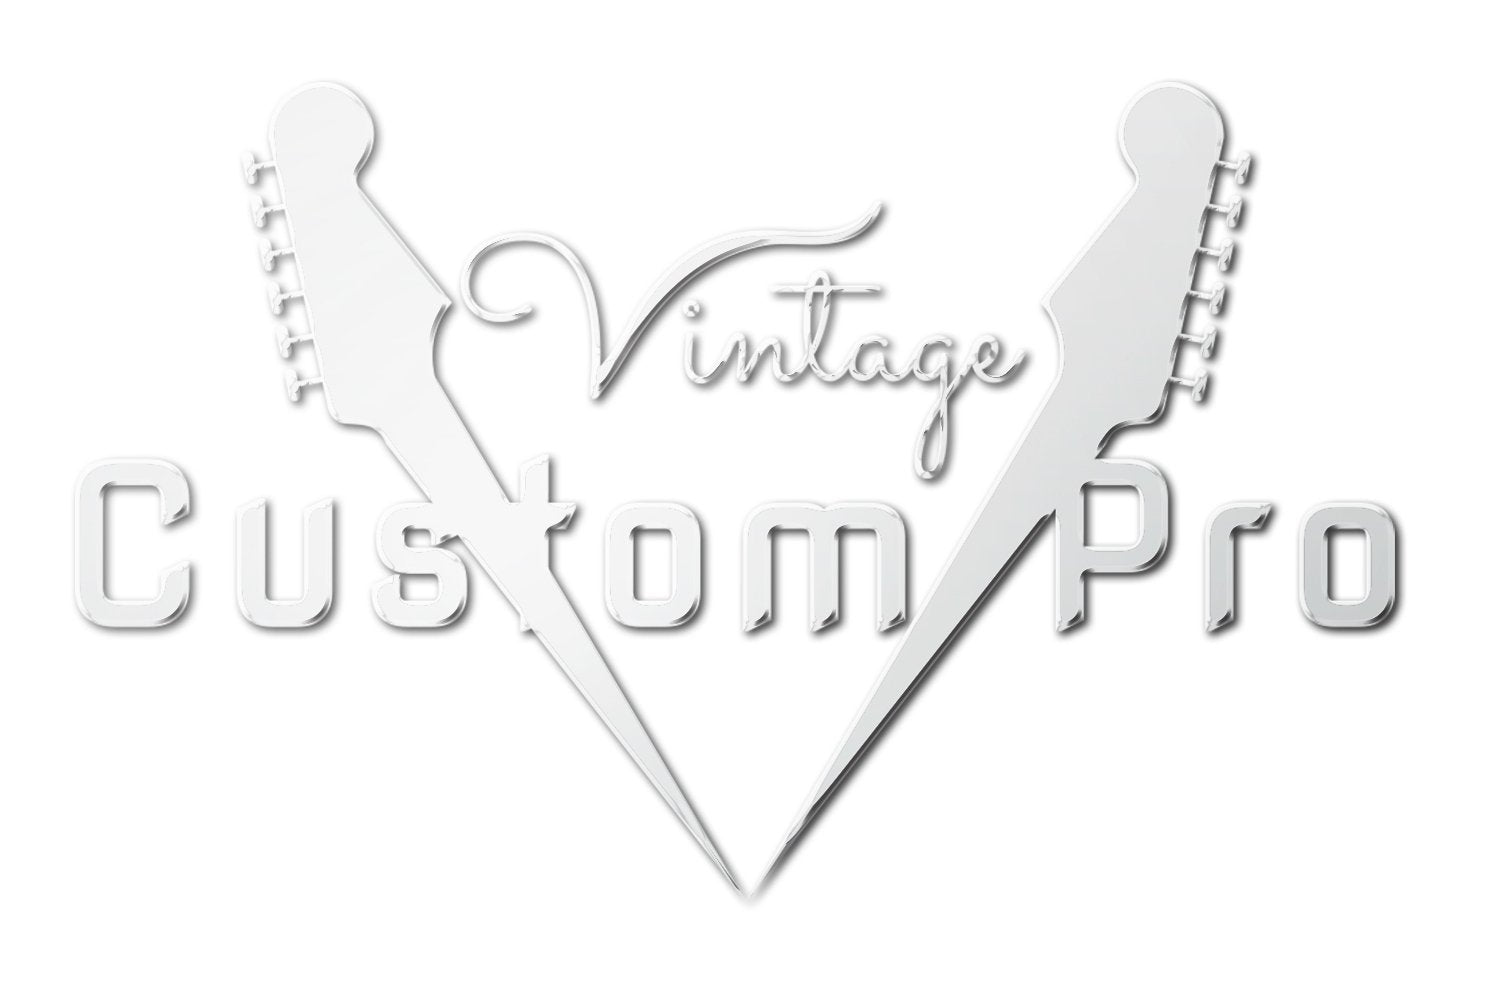 Vintage* V130CRS Electric Guitar, Electric Guitar for sale at Richards Guitars.